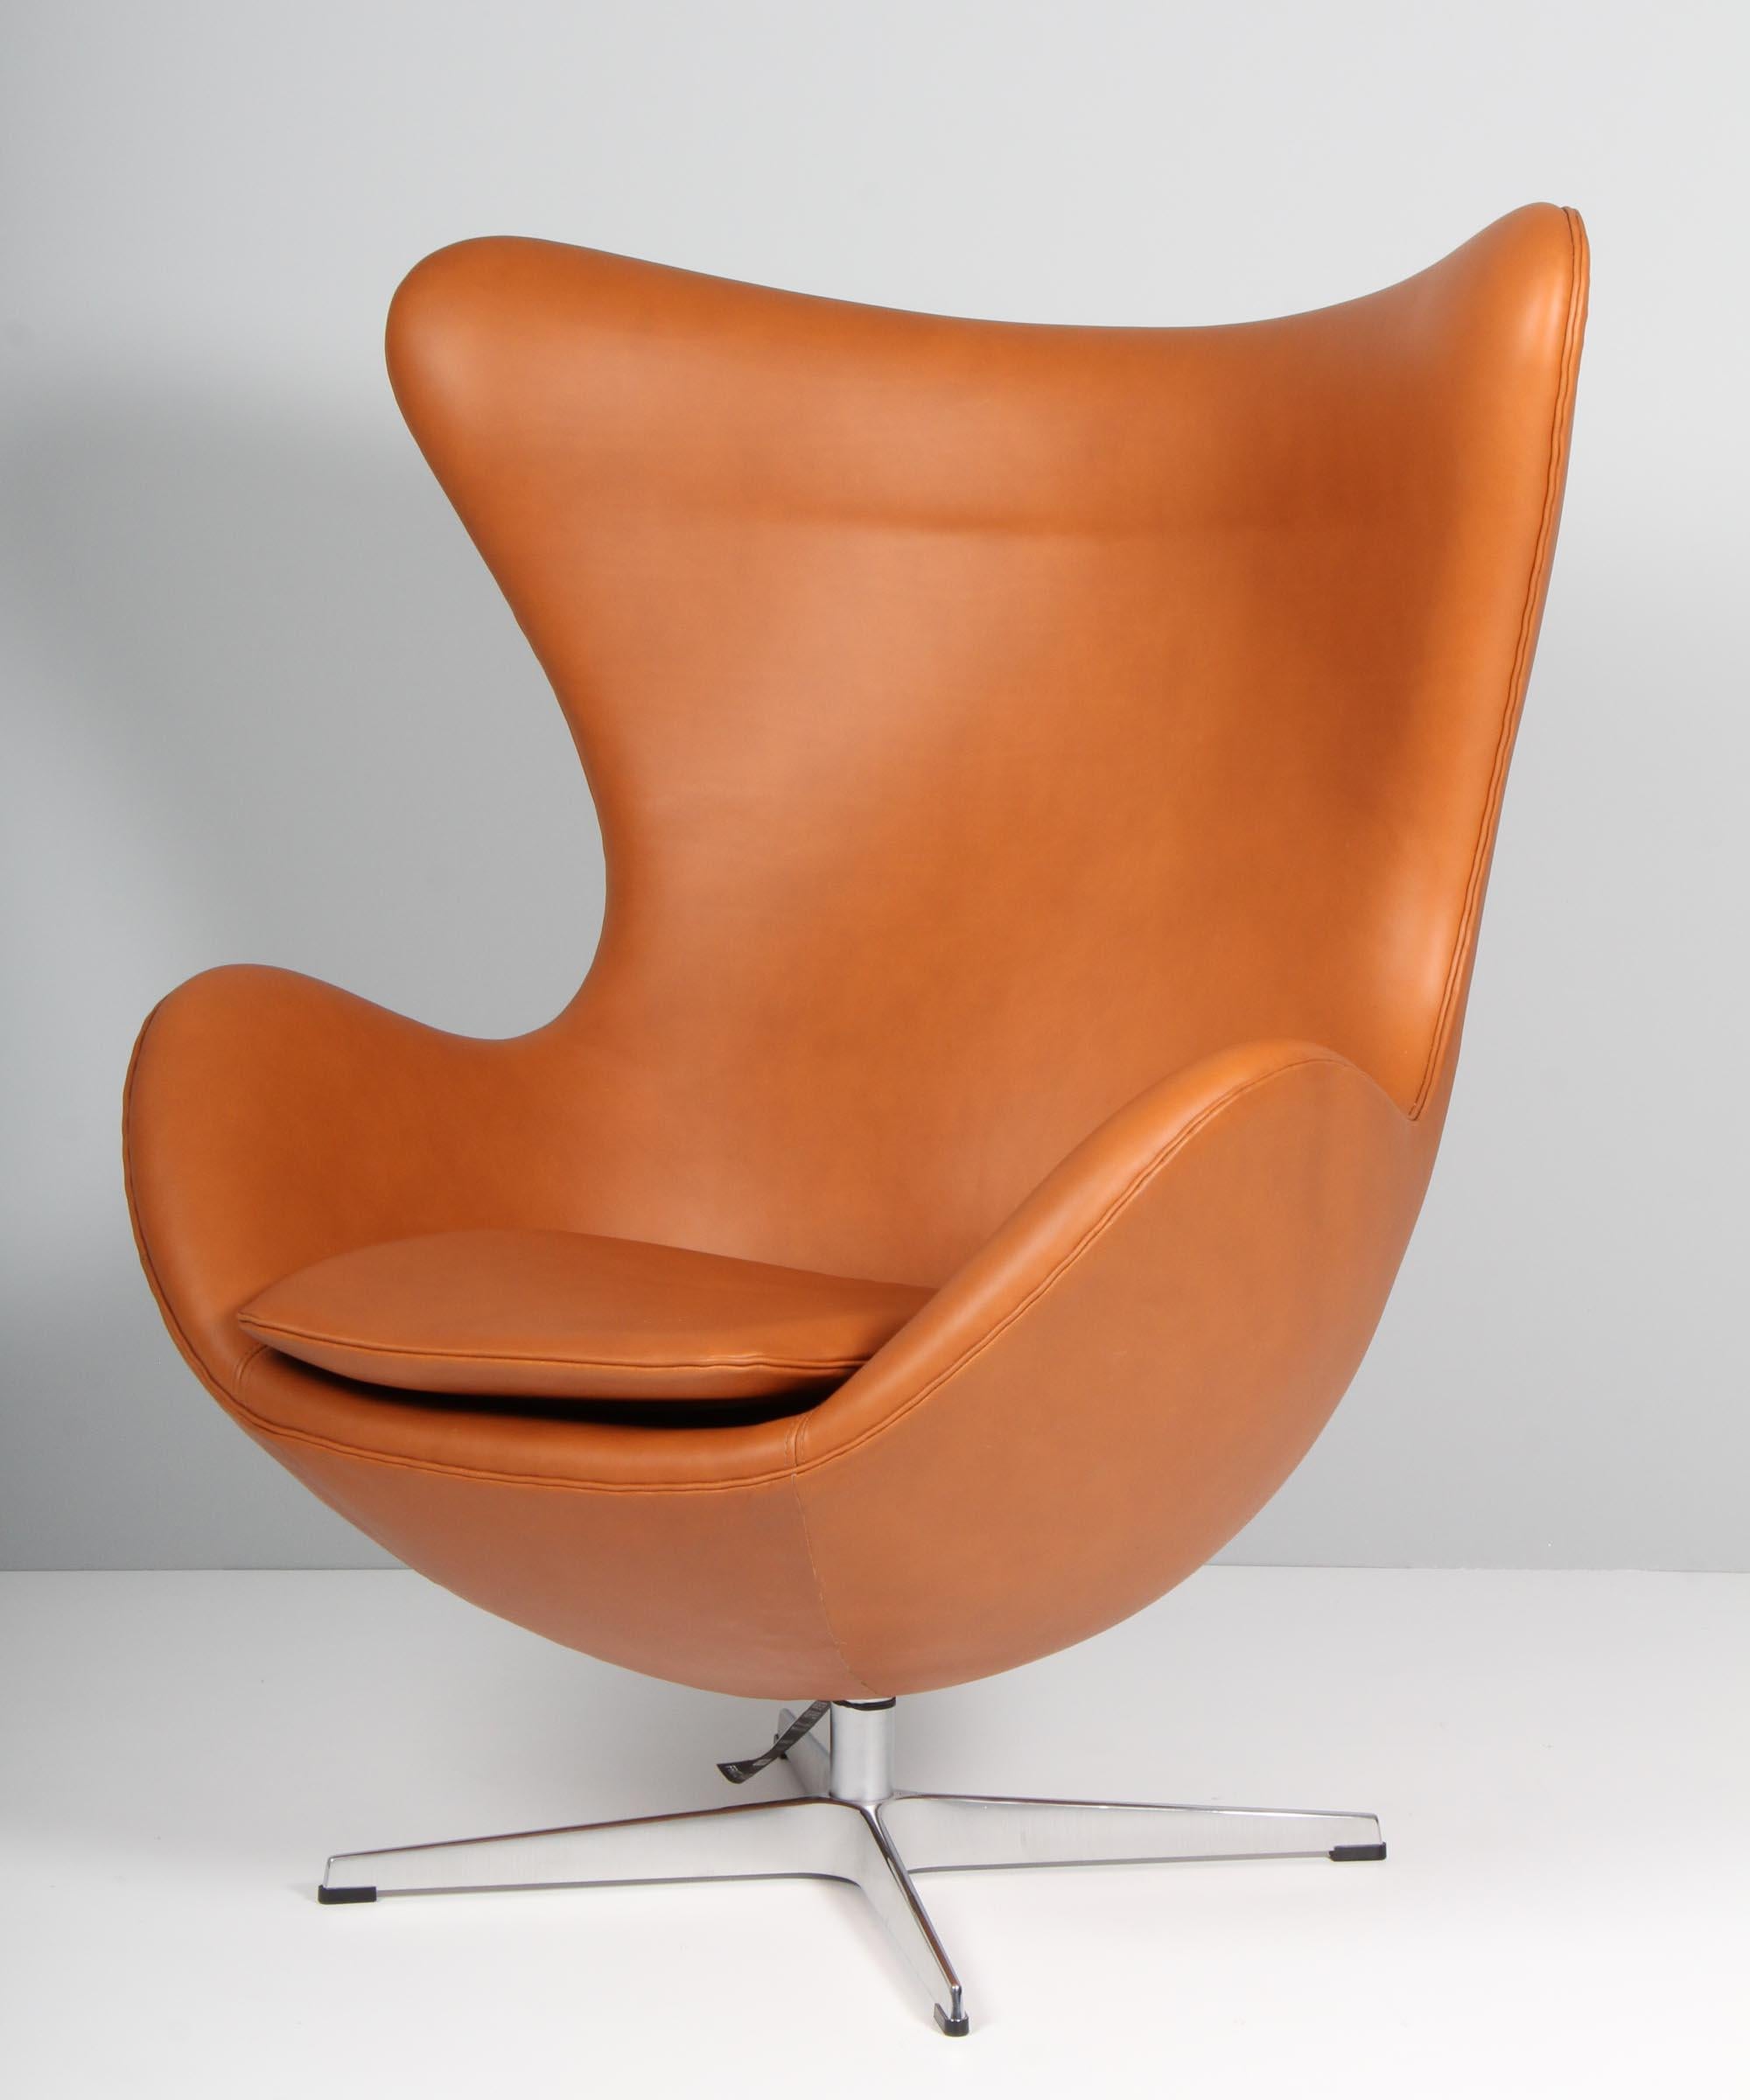 Neu Arne Jacobsen Satz von Sesseln Modell Egg. Neu gepolstert mit Walnuss-Anilinleder.

Vier-Sterne-Fußkreuz mit Kippfunktion.

Hergestellt von Fritz Hansen.

Dieser ikonische Stuhl ist einer der berühmtesten Stühle der Welt und wird von